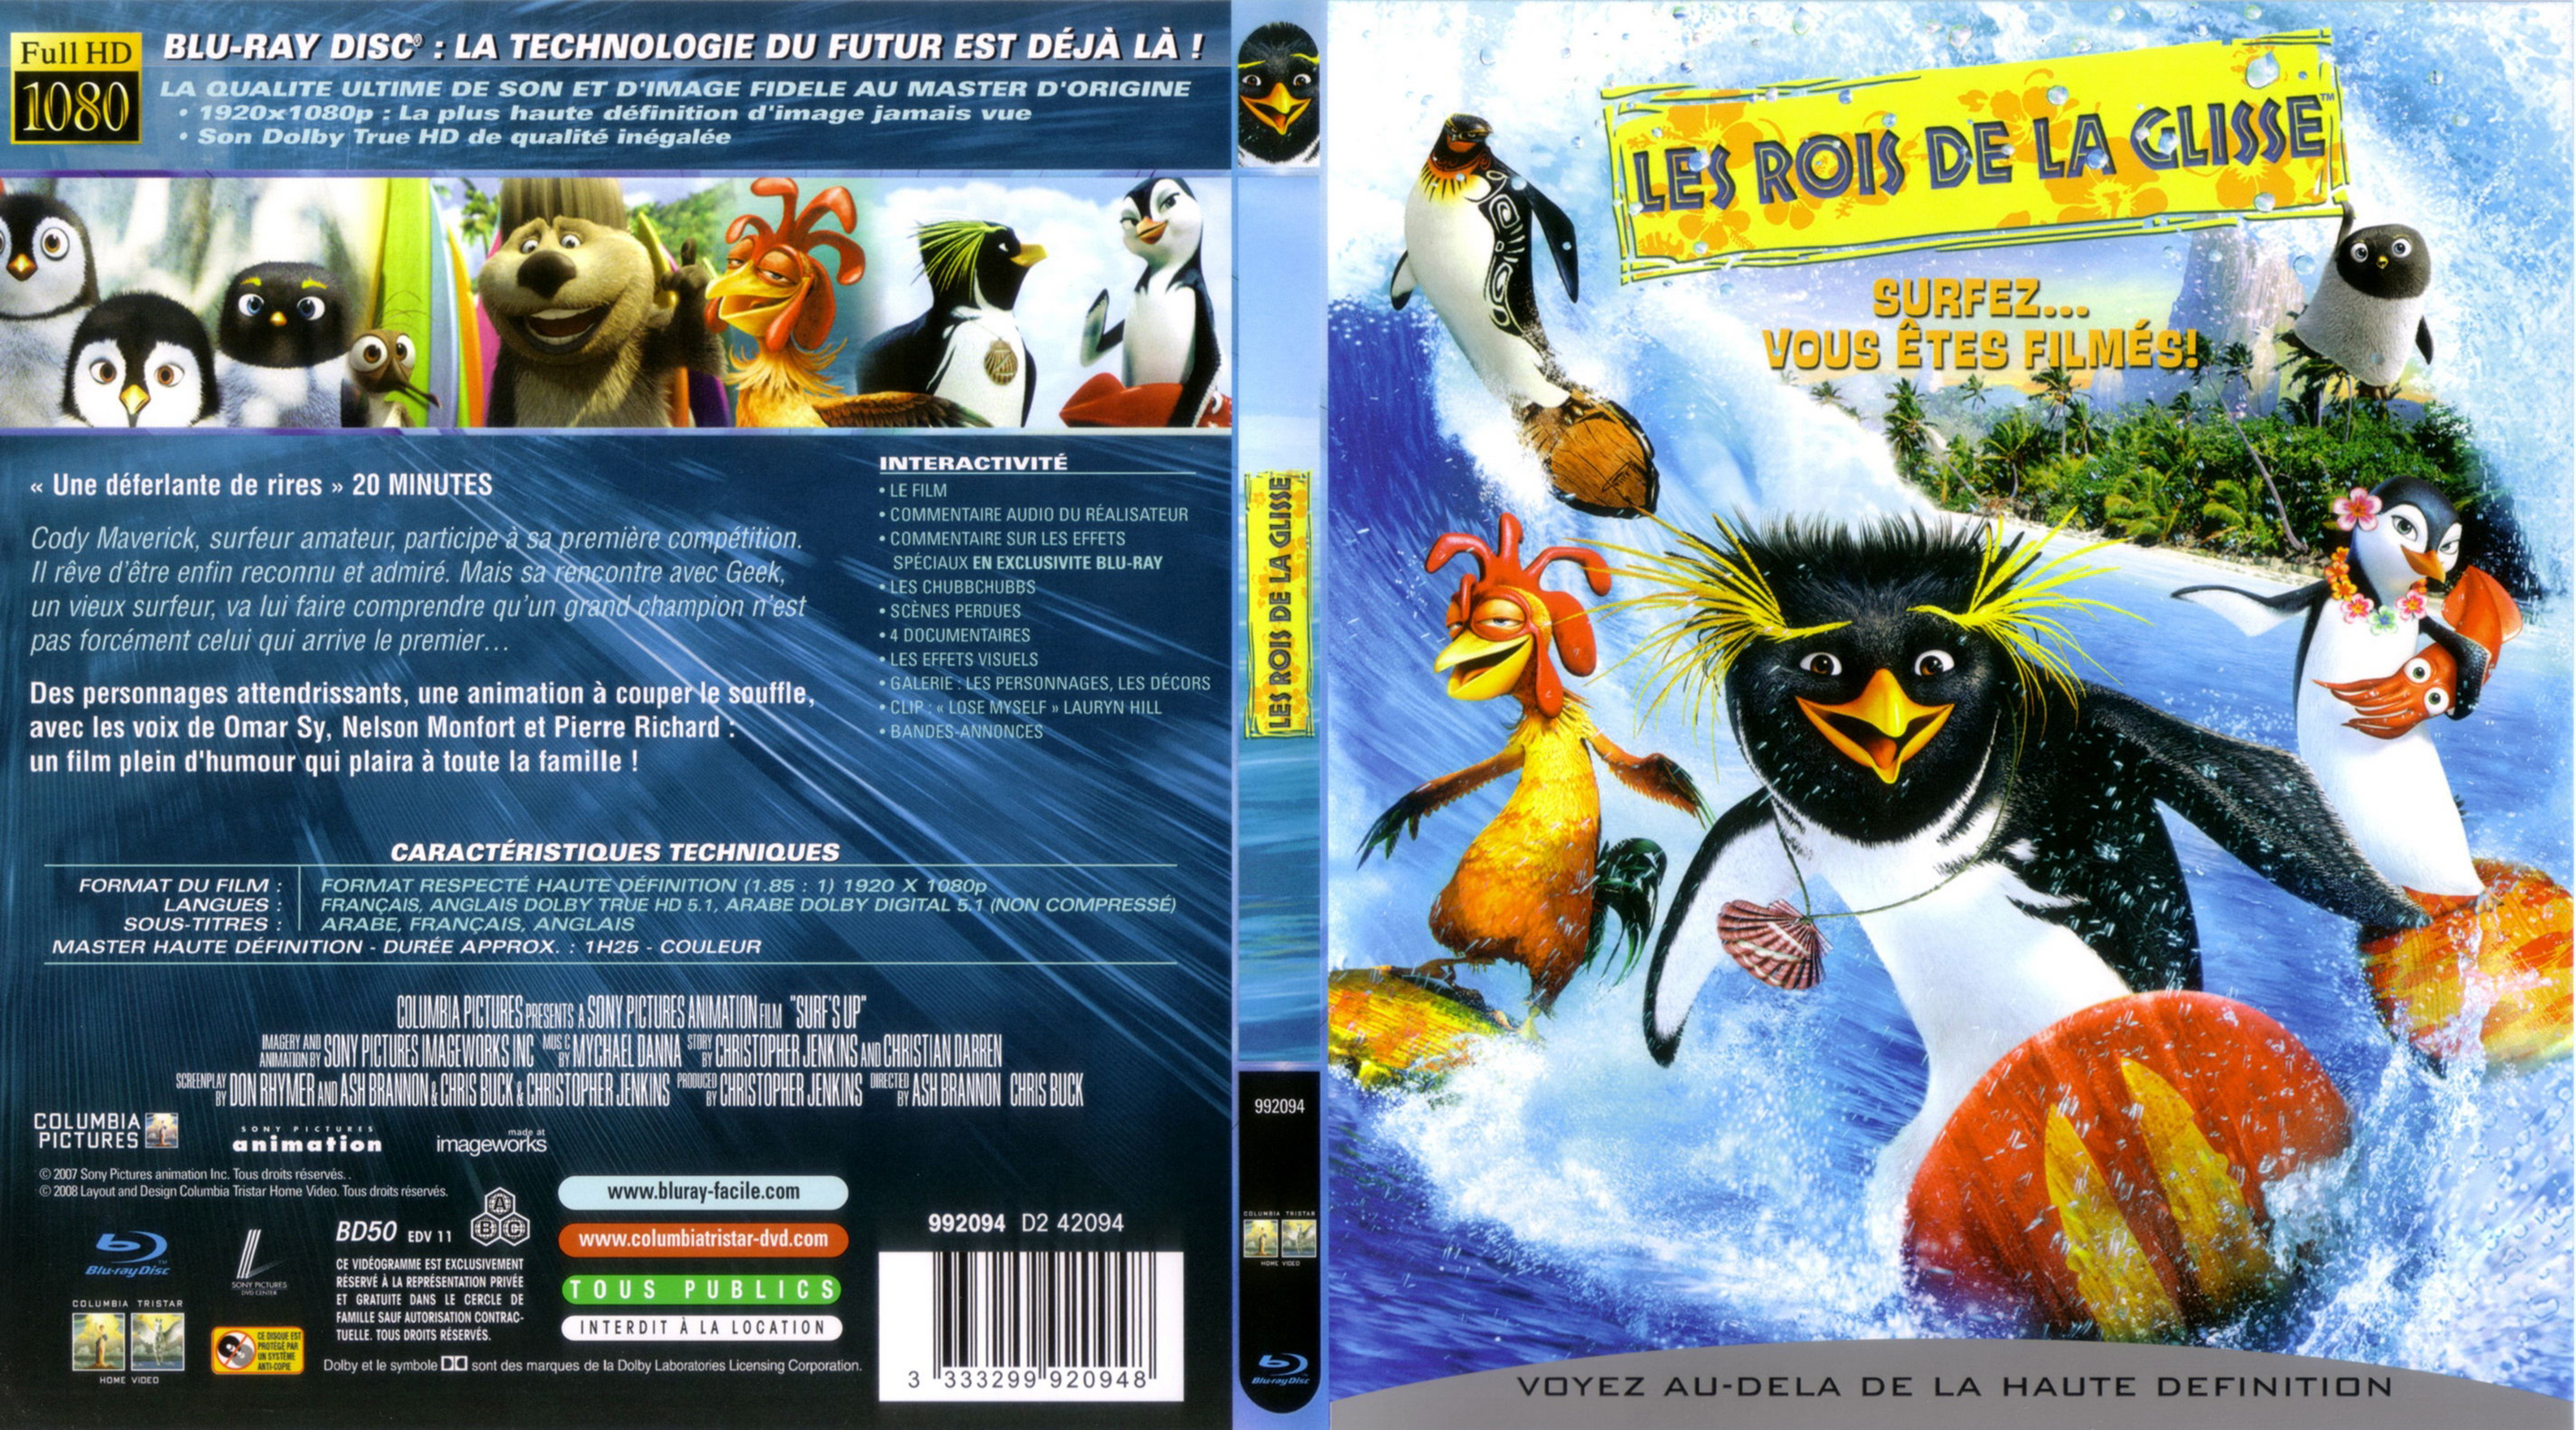 Jaquette DVD Les rois de la glisse (BLU-RAY)